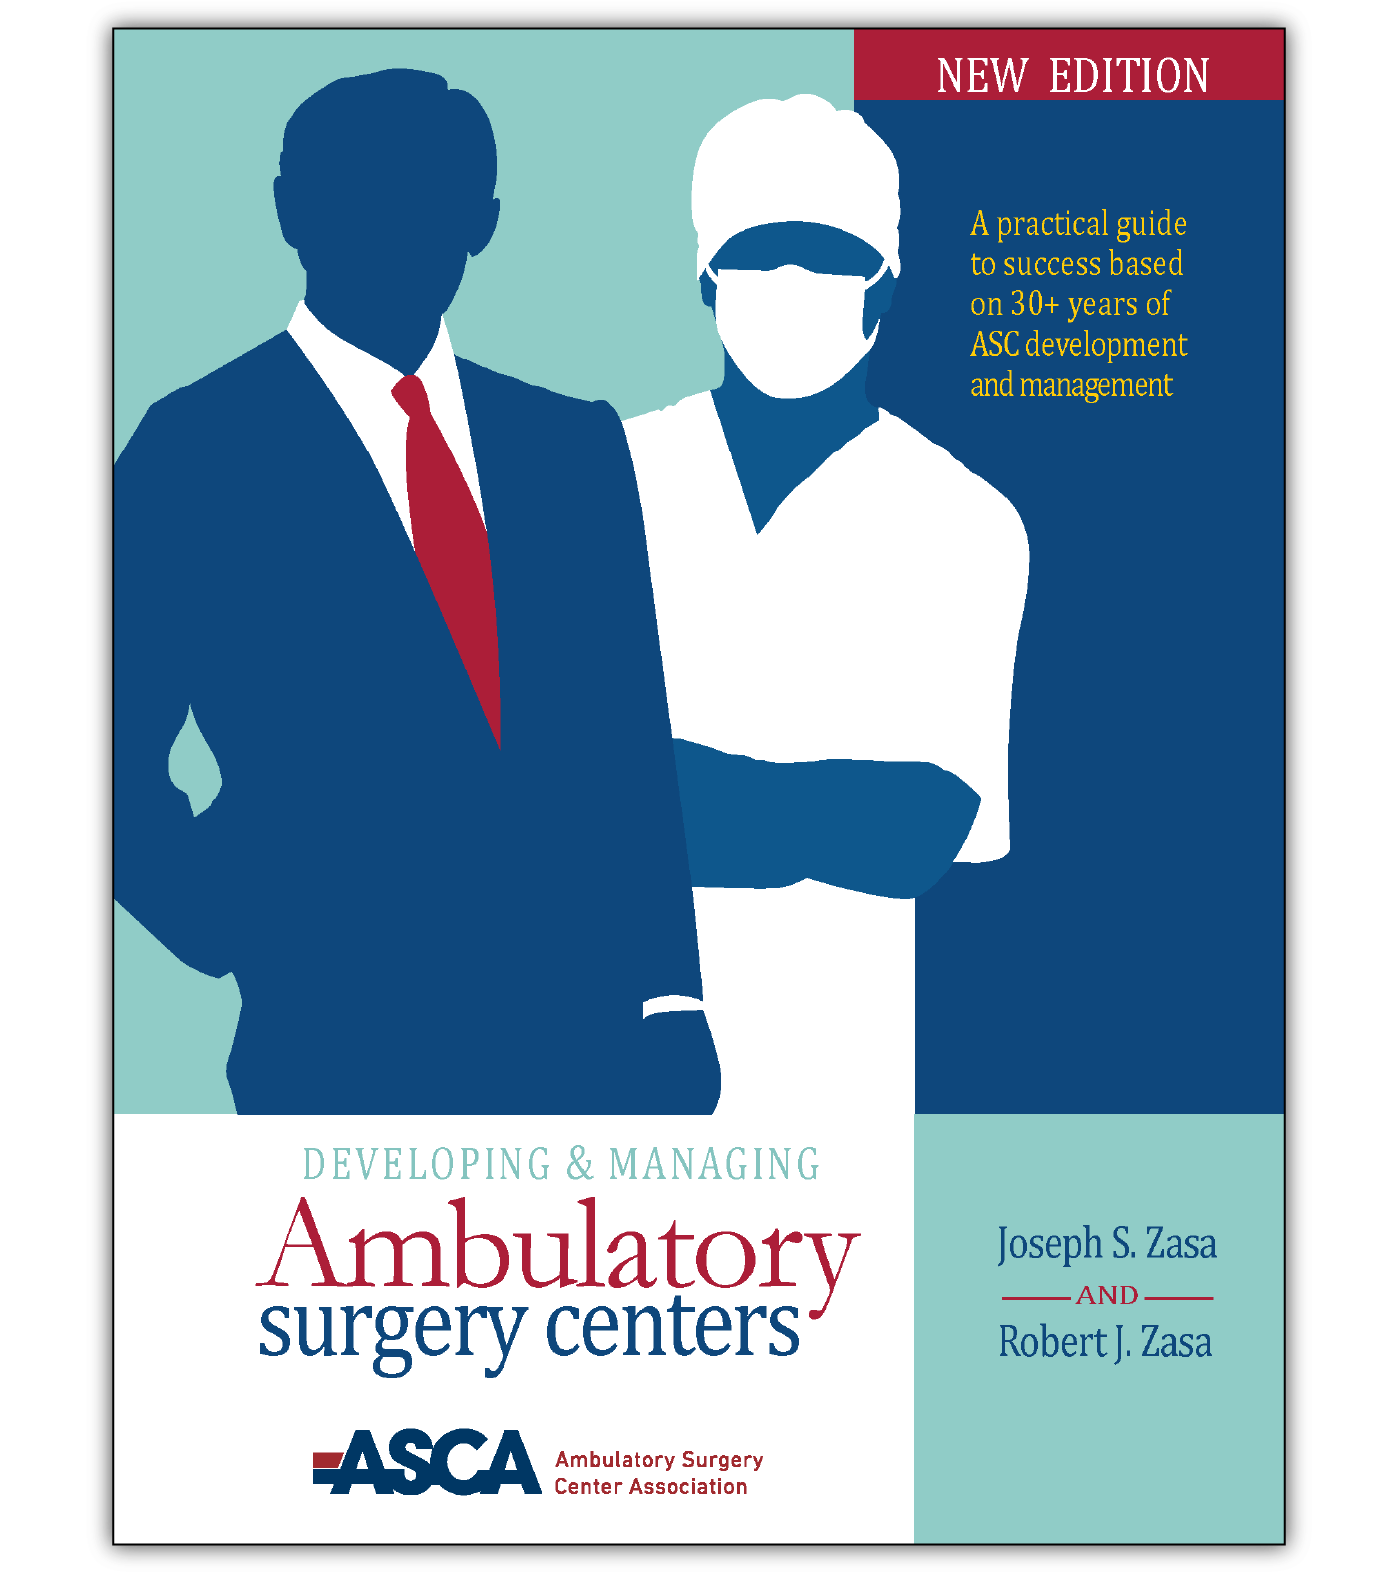 Developing & Managing Ambulatory Surgery Centers